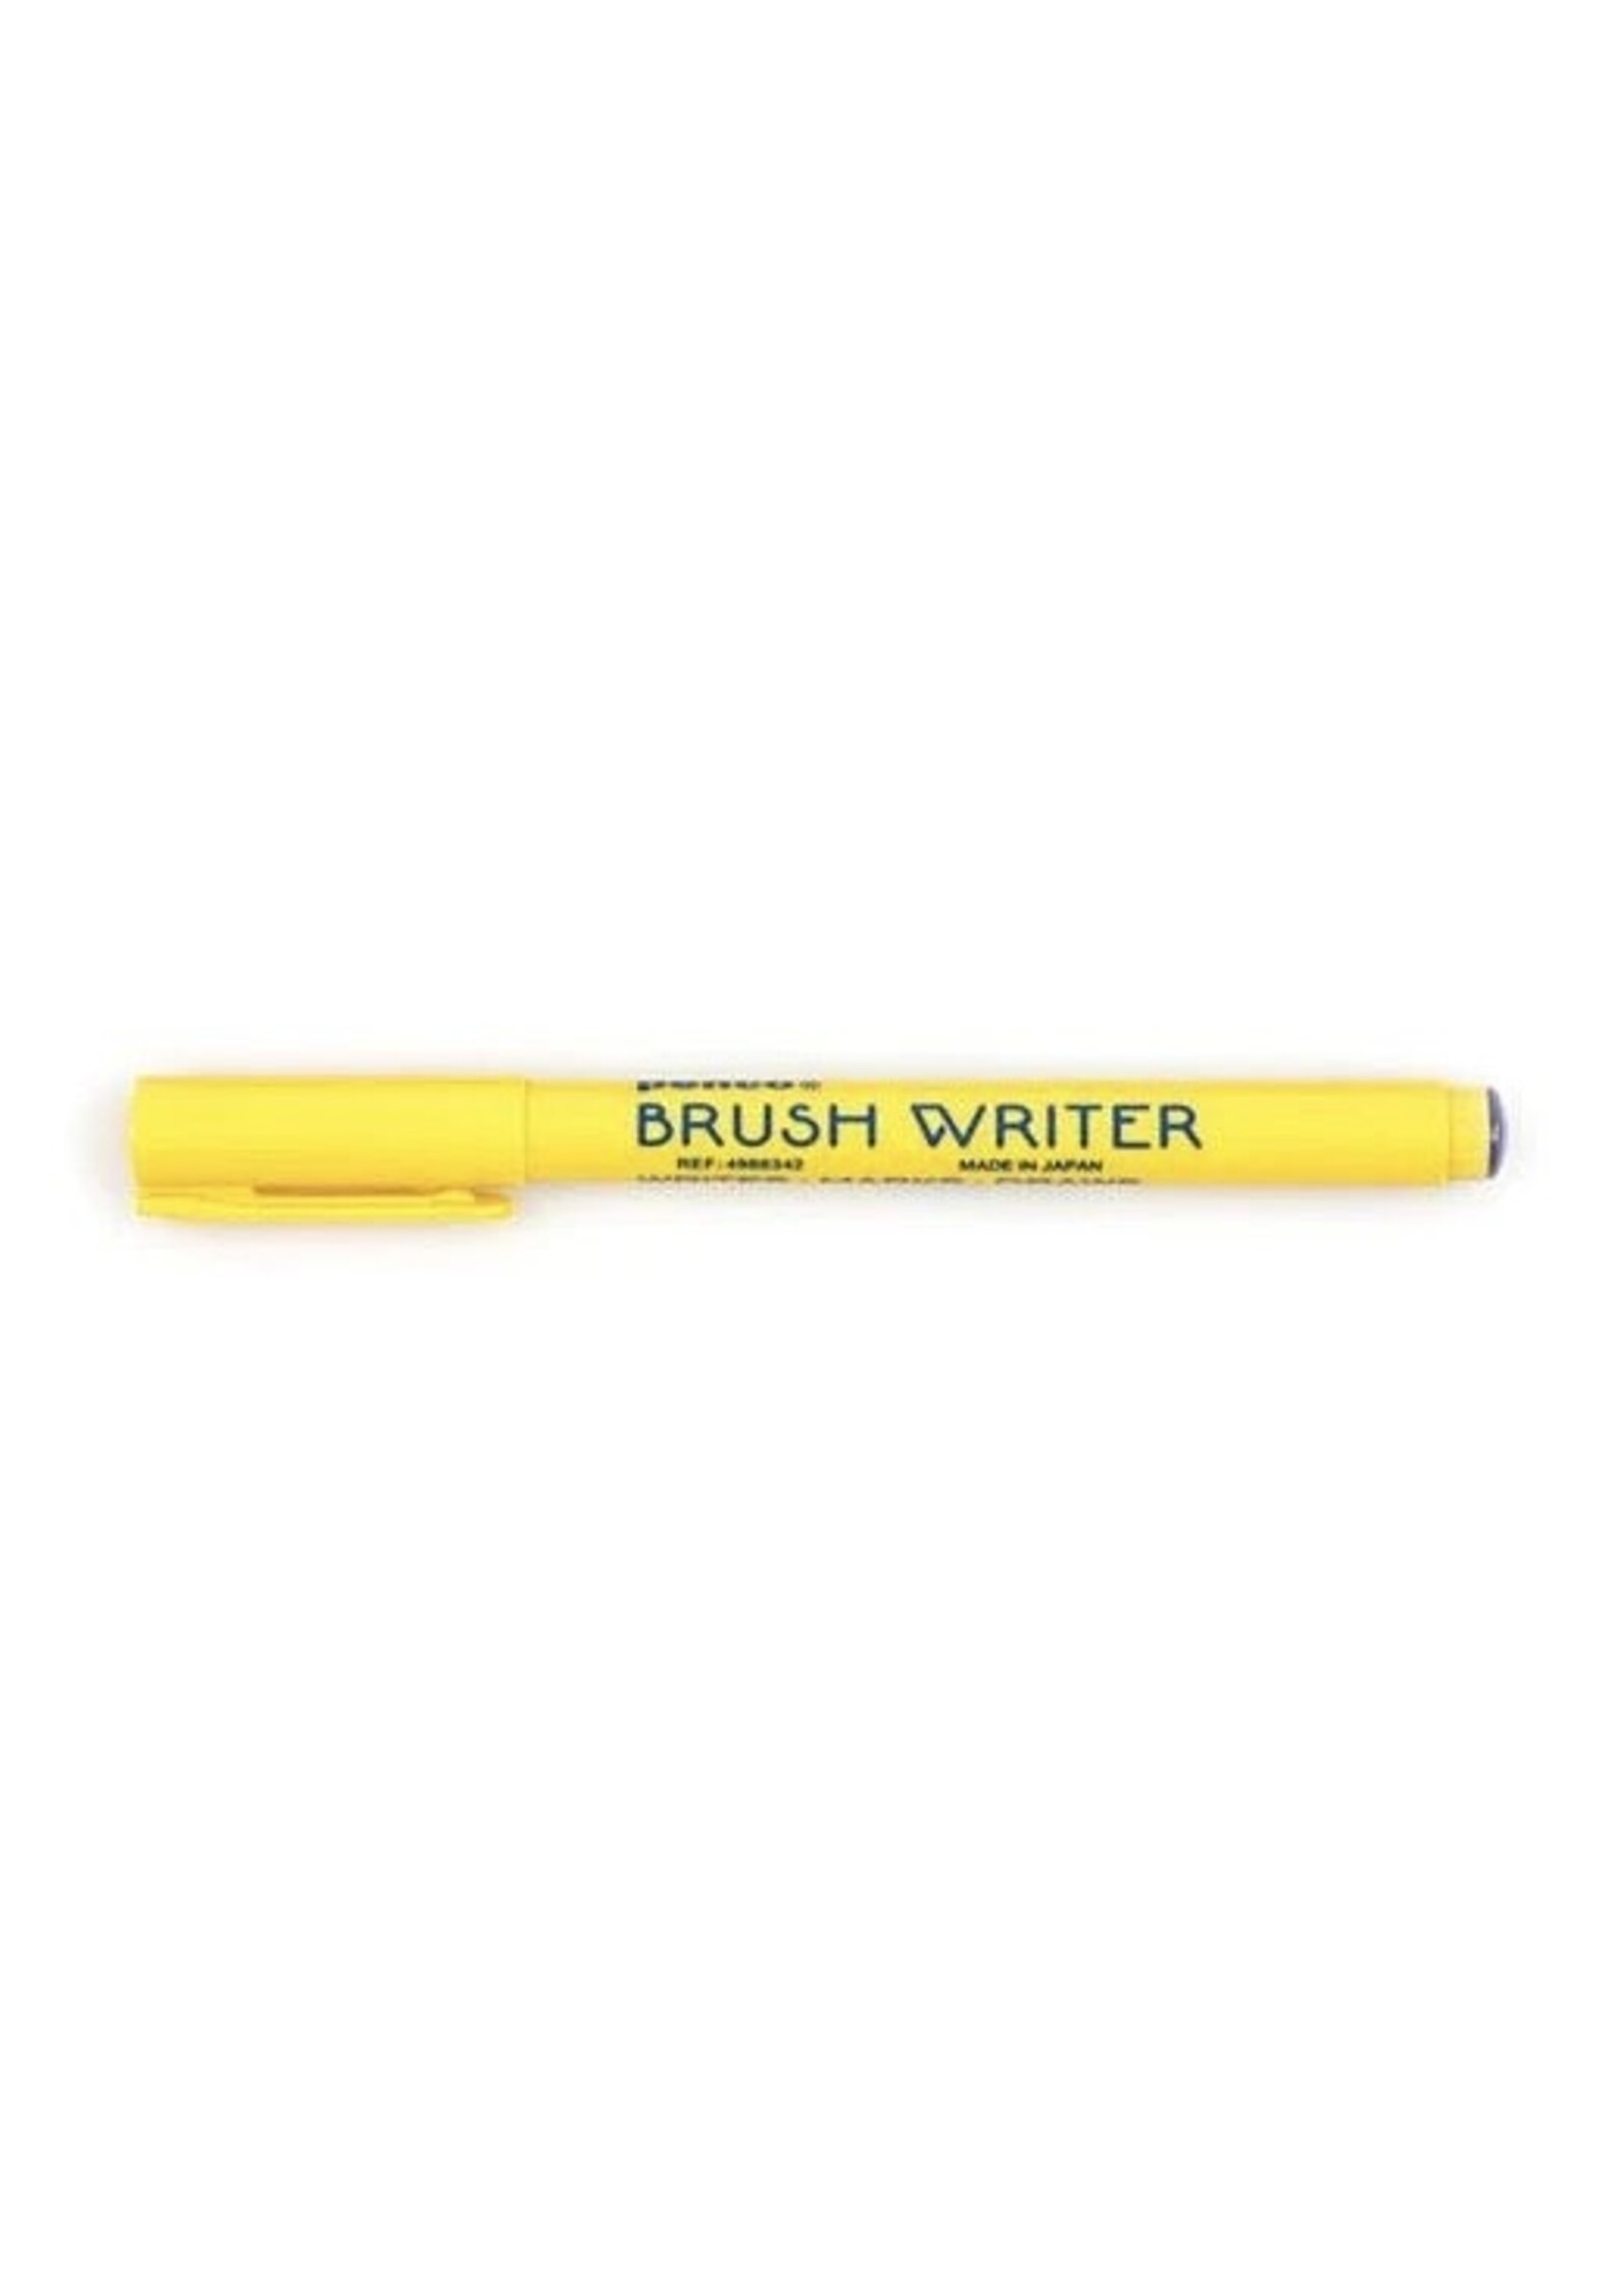 Hightide Pens "Brush Writer" by Penco